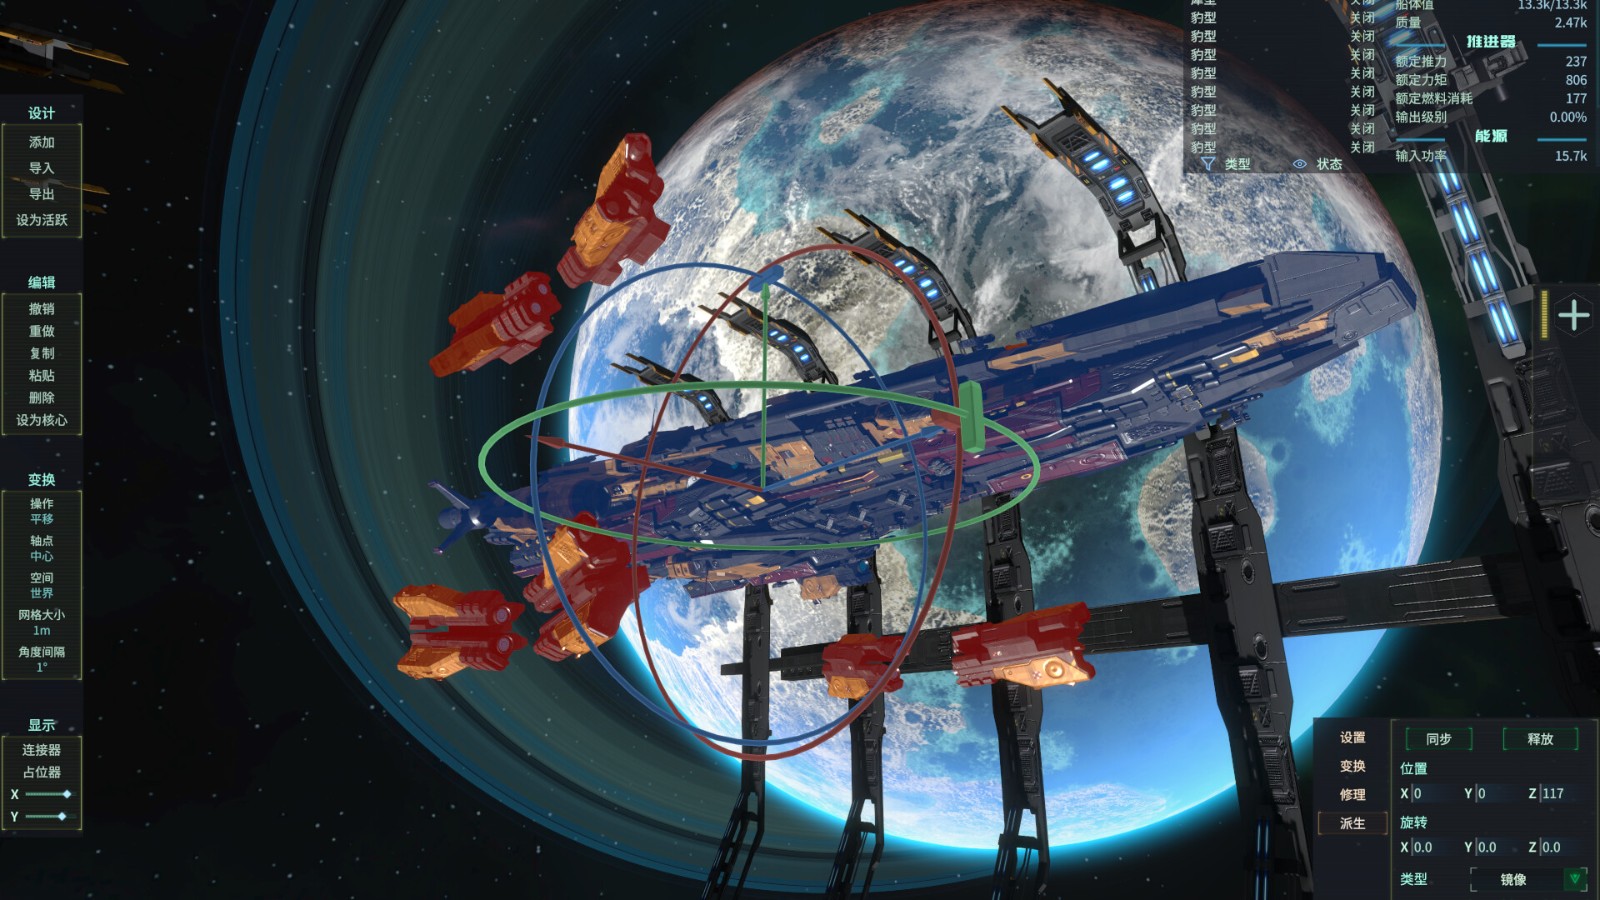 科幻戰艦沙盒遊戲《維度之間無畏戰艦設計師》 在Steam發售